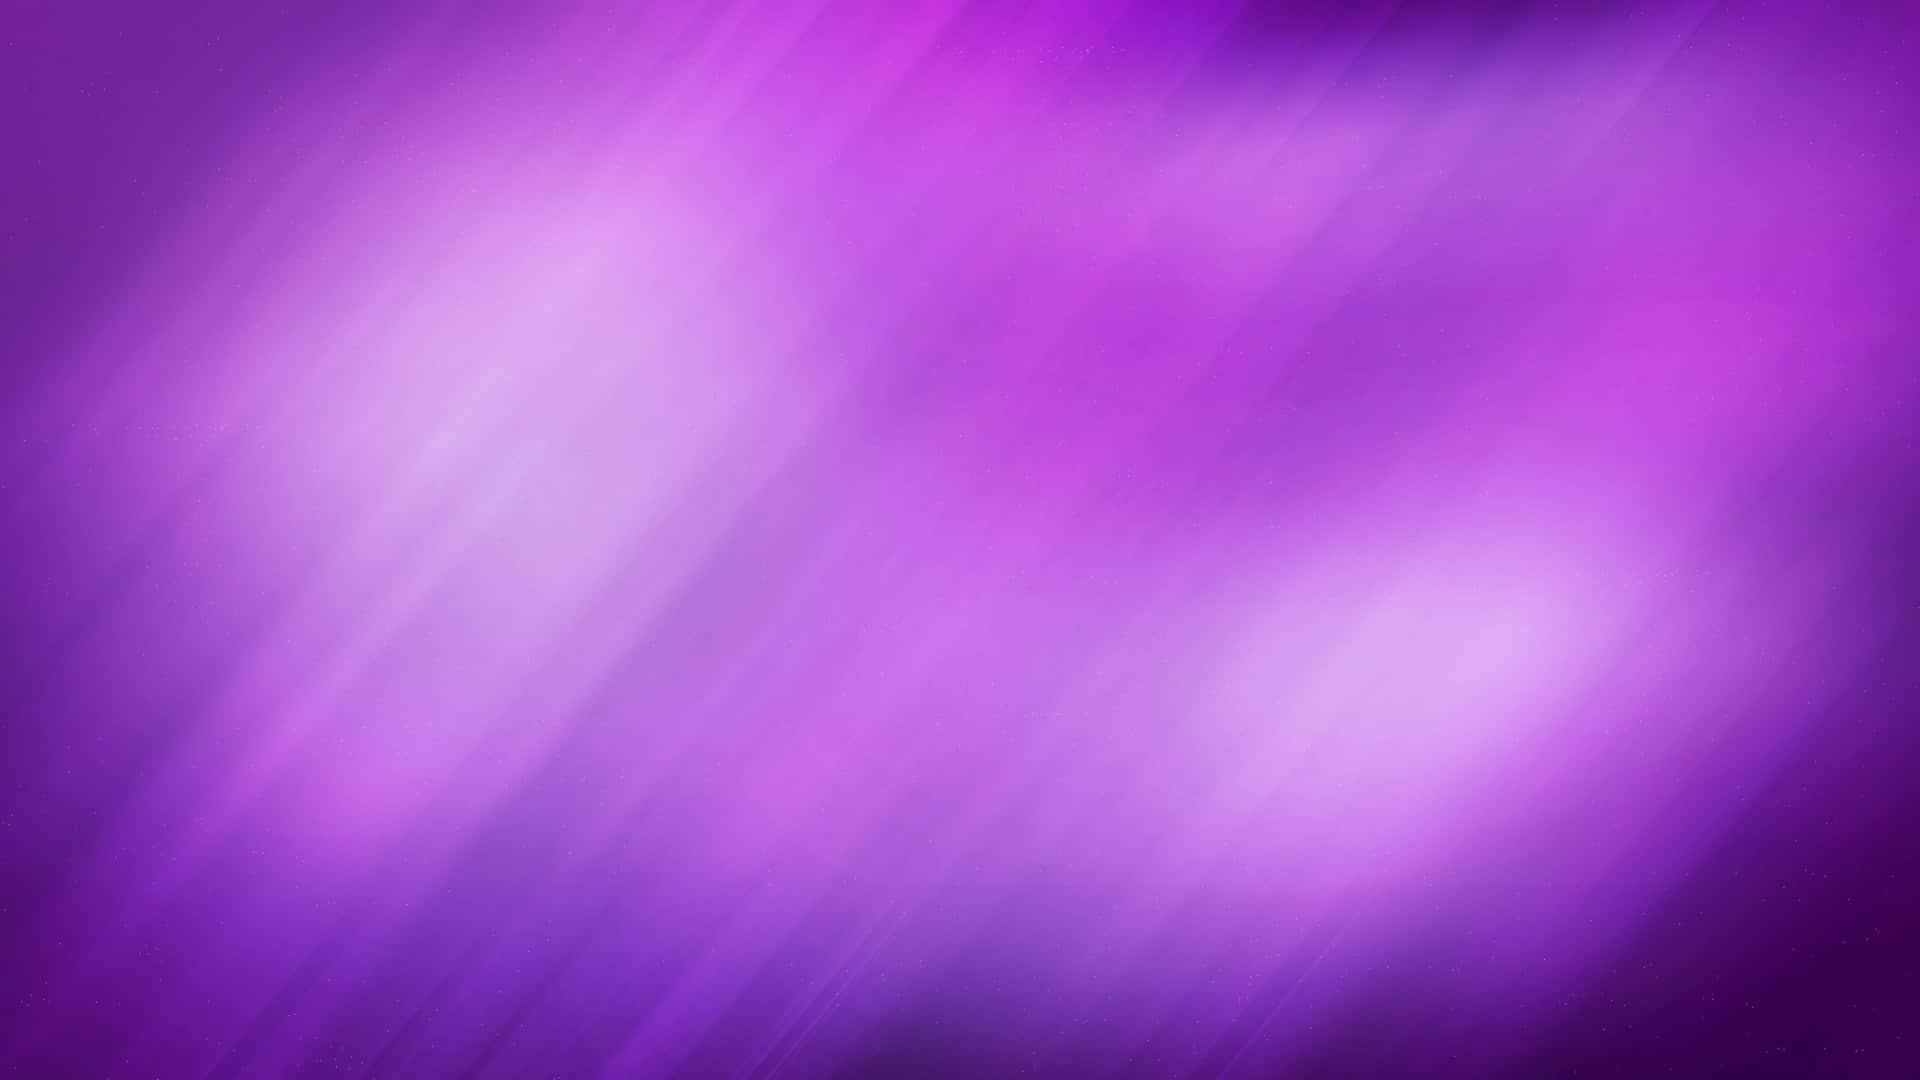 Unosfondo Vibrante Di Colore Viola Pieno.